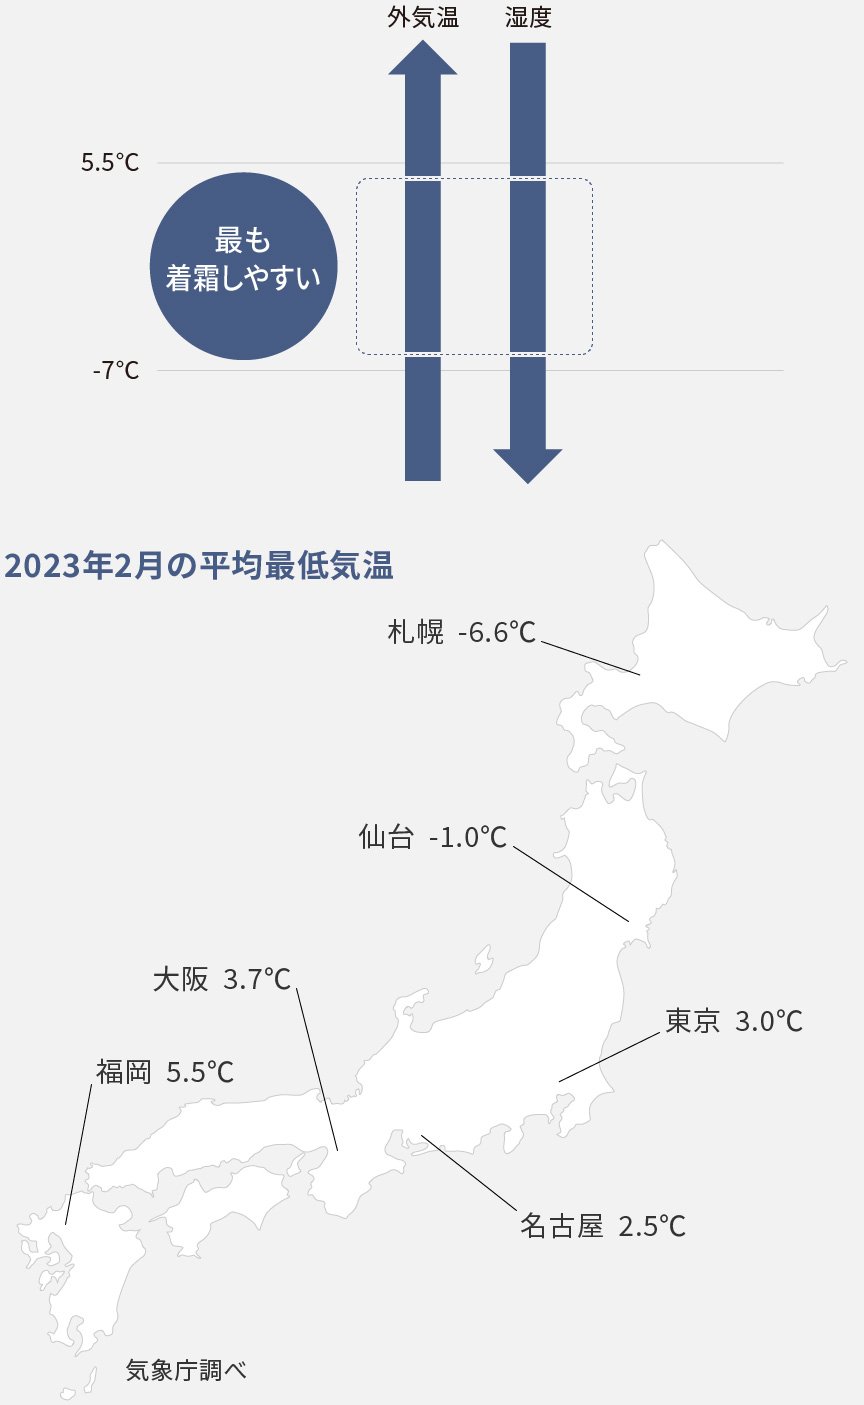 各地の2023年2月の平均最低気温を示した日本地図です。5.5°C ～-7°Cが最も着霜しやすい。大阪 3.7°C 福岡 5.5°C 札幌 -6.6°C. 仙台 -1.0°C. 名古屋 2.5°C 東京 3.0°C。